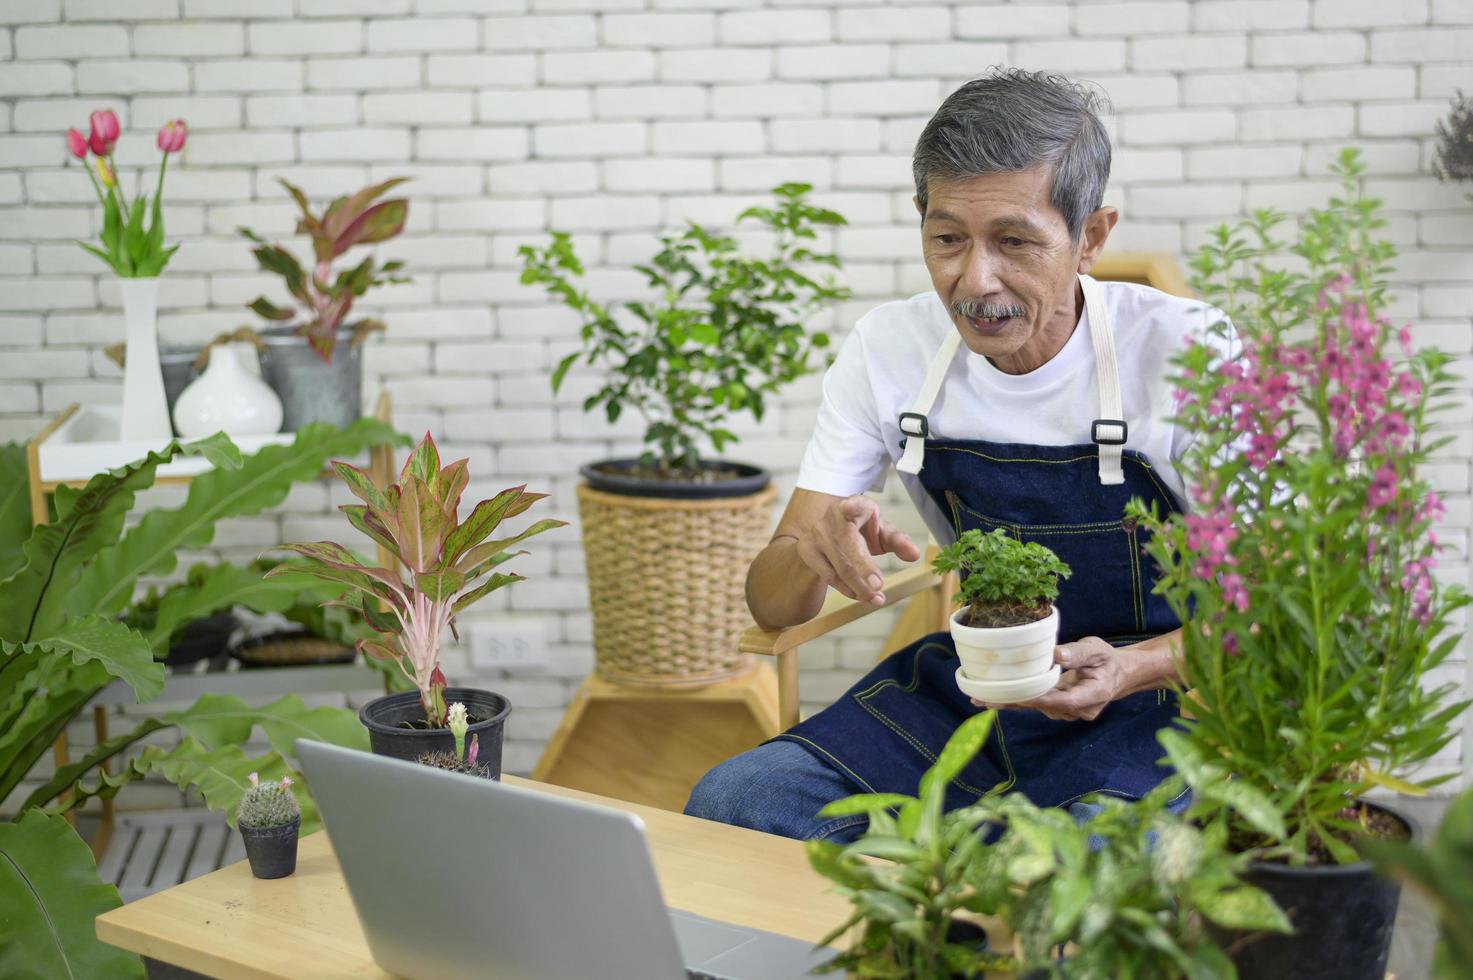 l'imprenditore senior che lavora con il laptop presenta piante d'appartamento durante lo streaming live online a casa, vendendo il concetto online foto